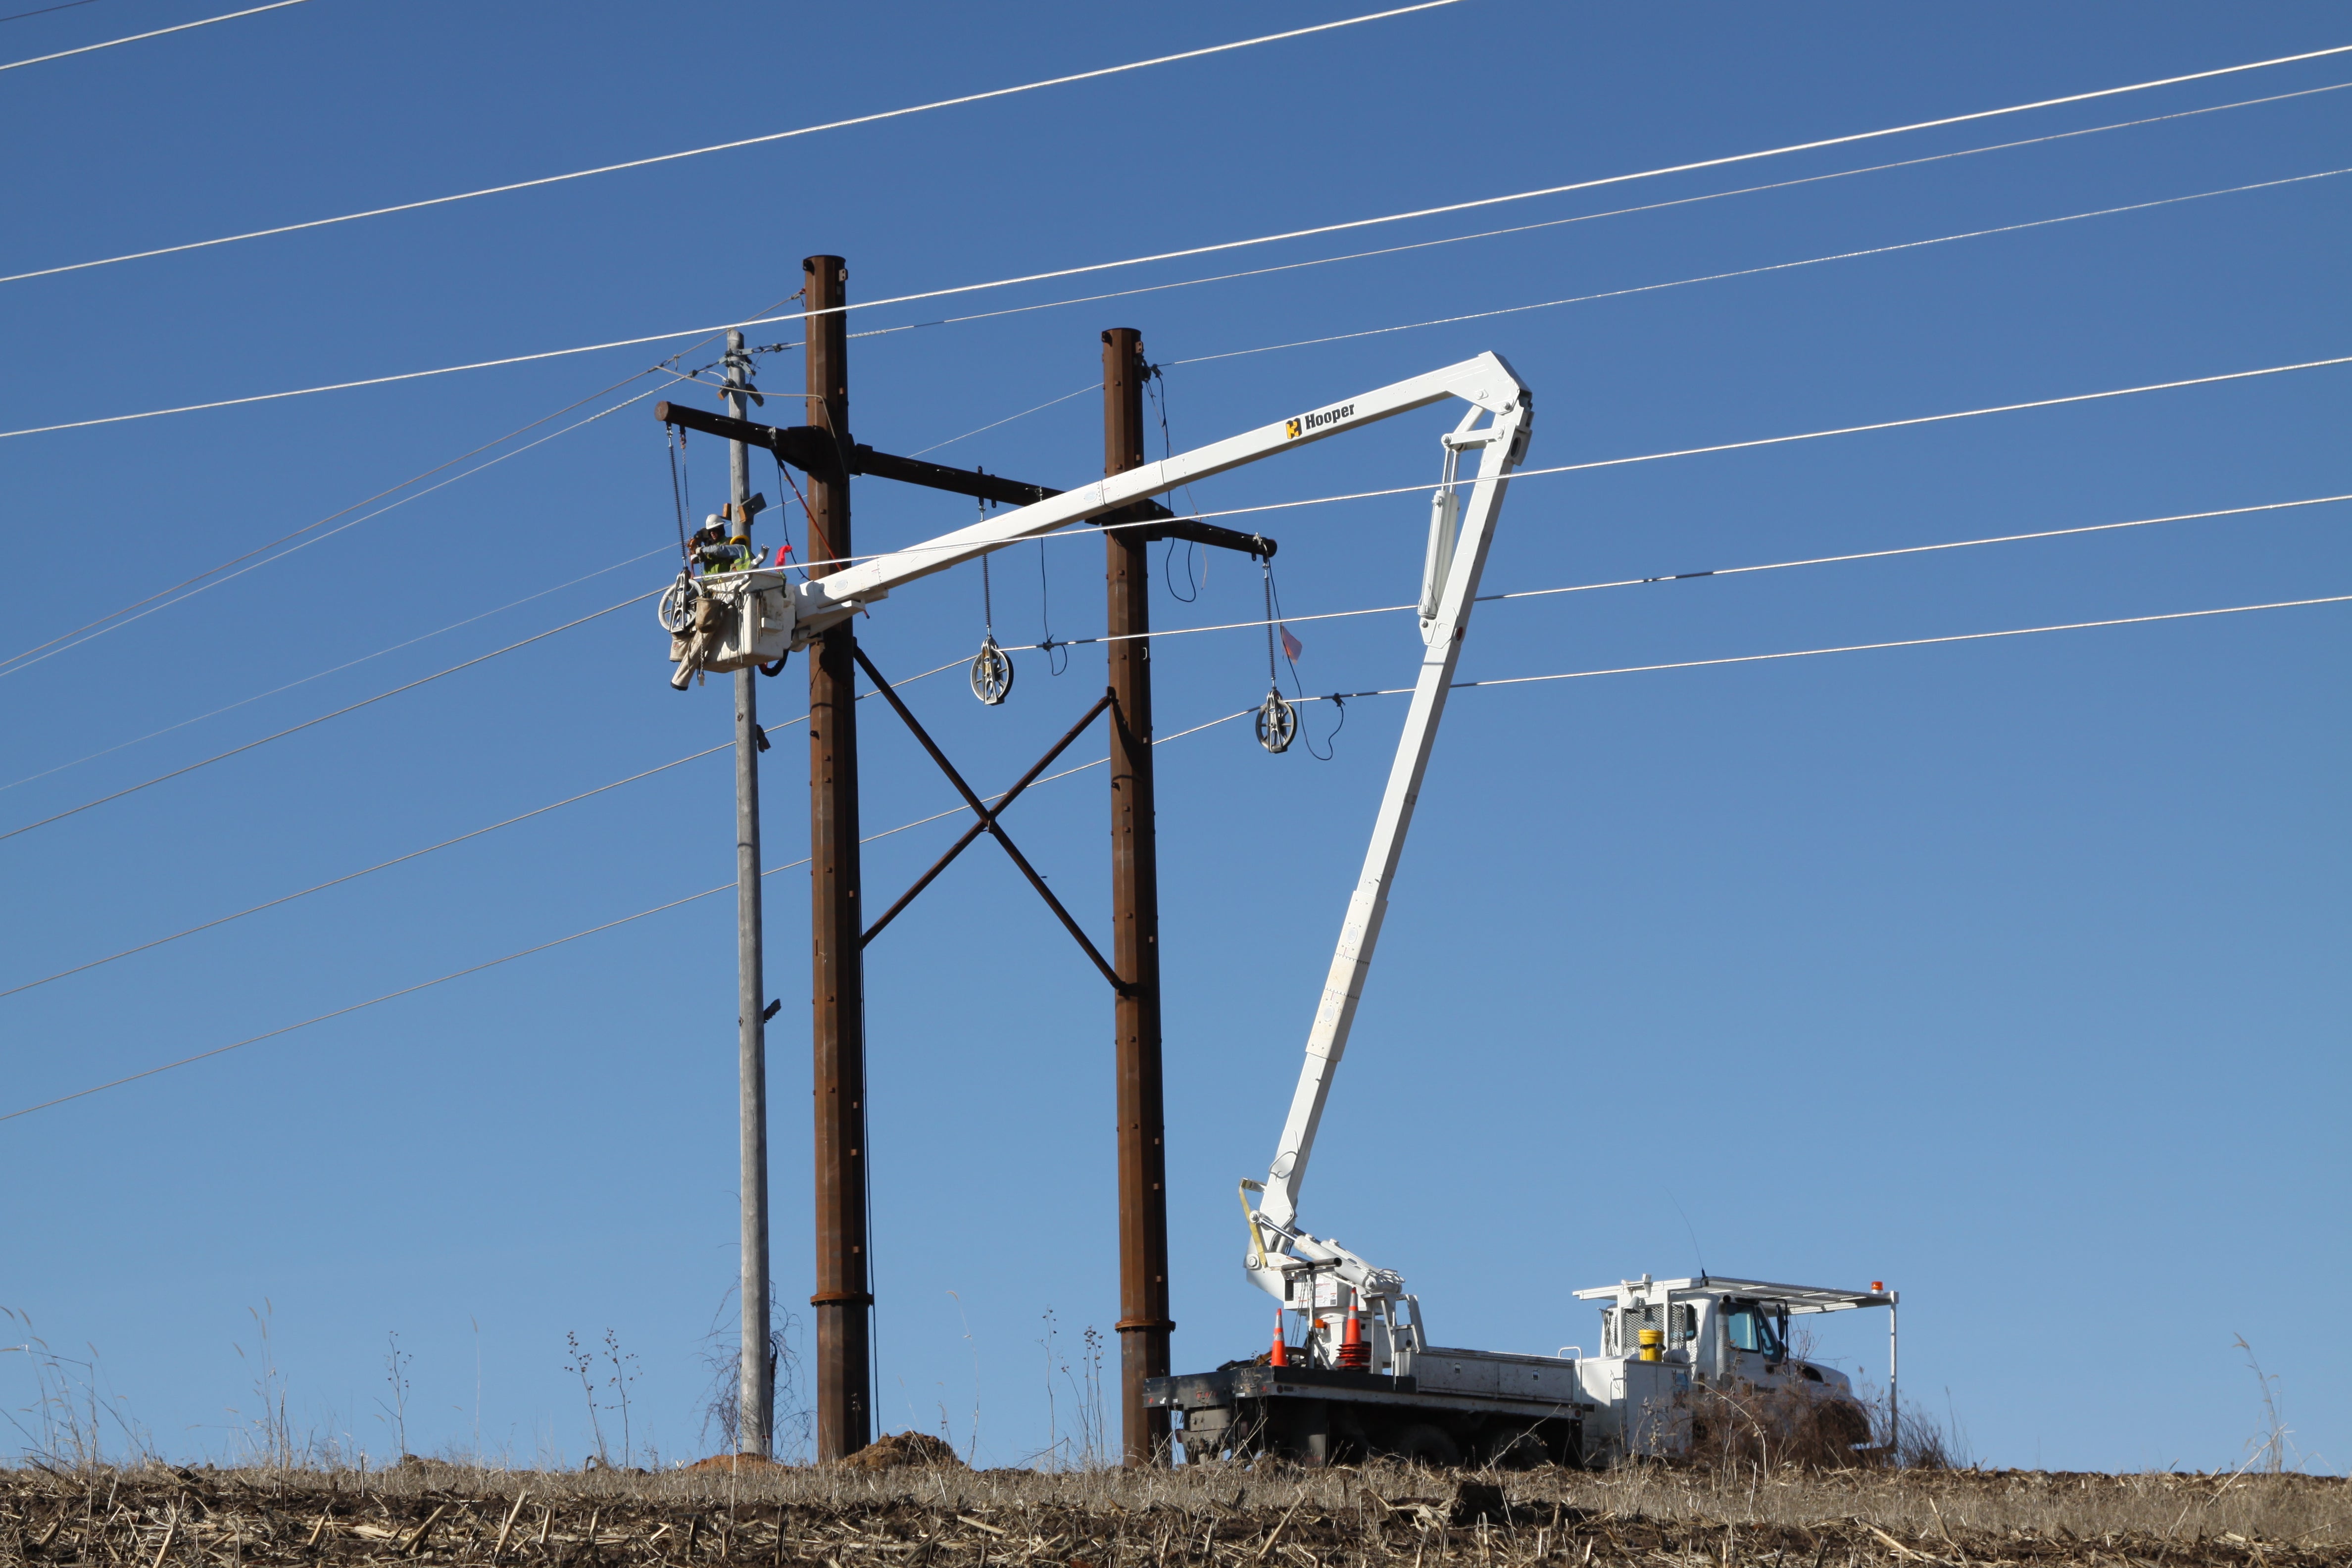 Upgrading a 161 kV line